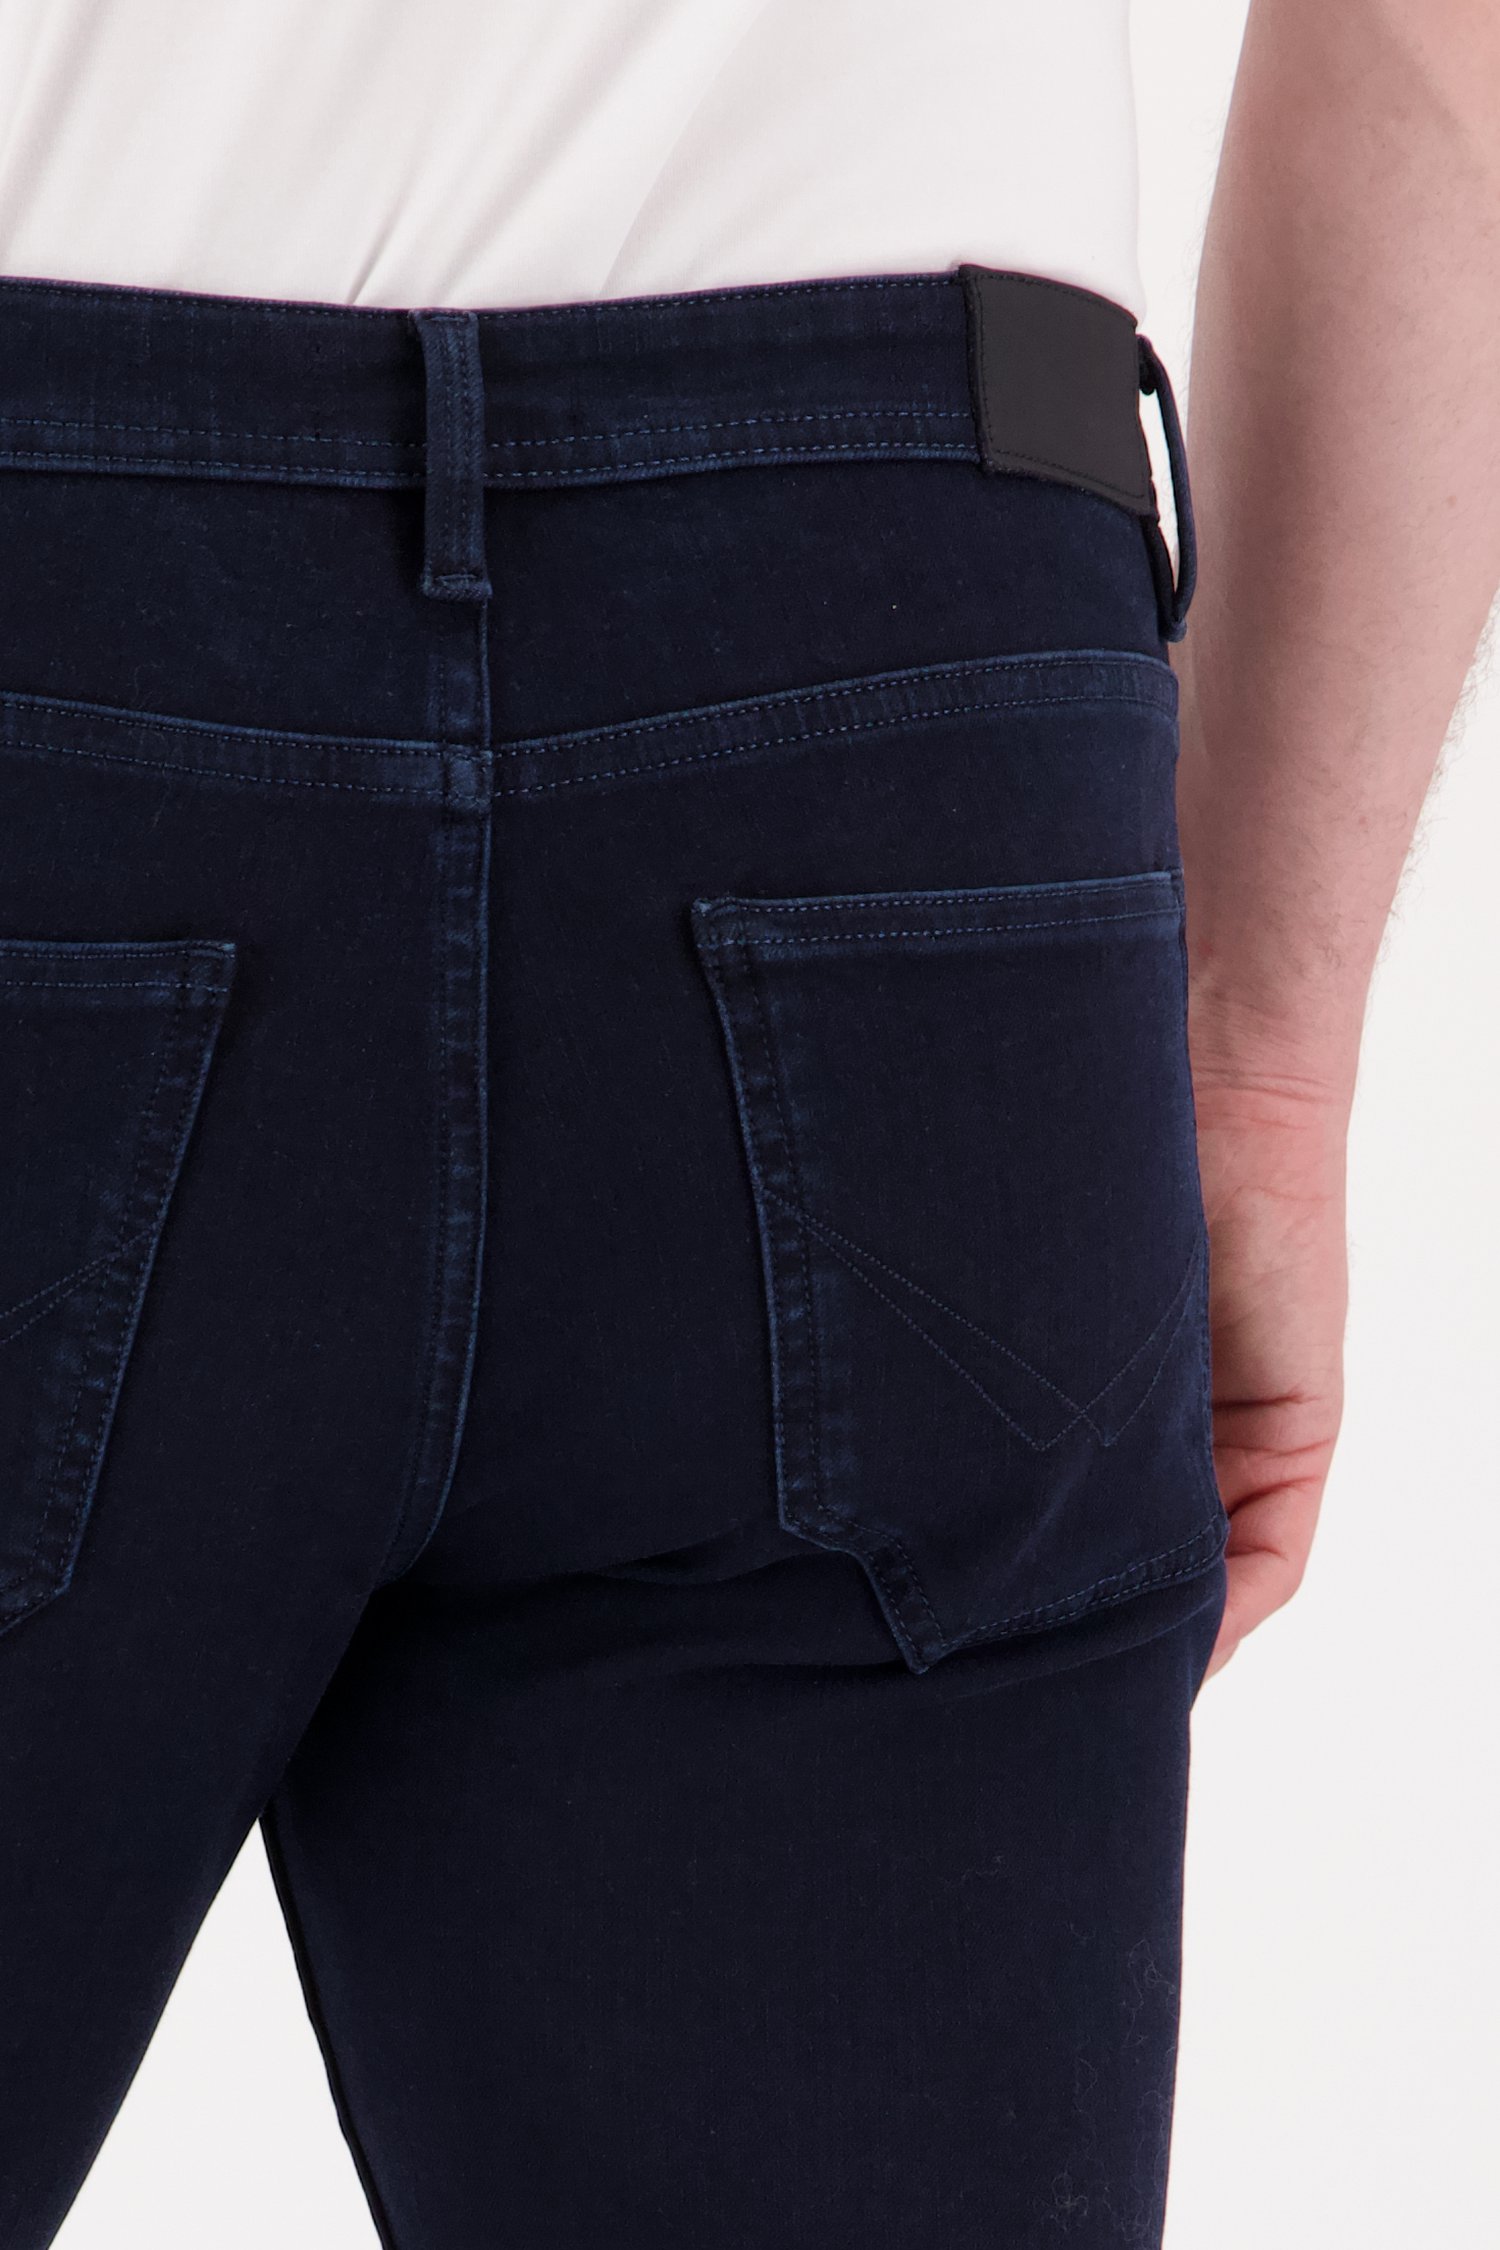 Navy jeans stretch - Lars - -slim fit - L34 van Liberty Island Denim voor Heren